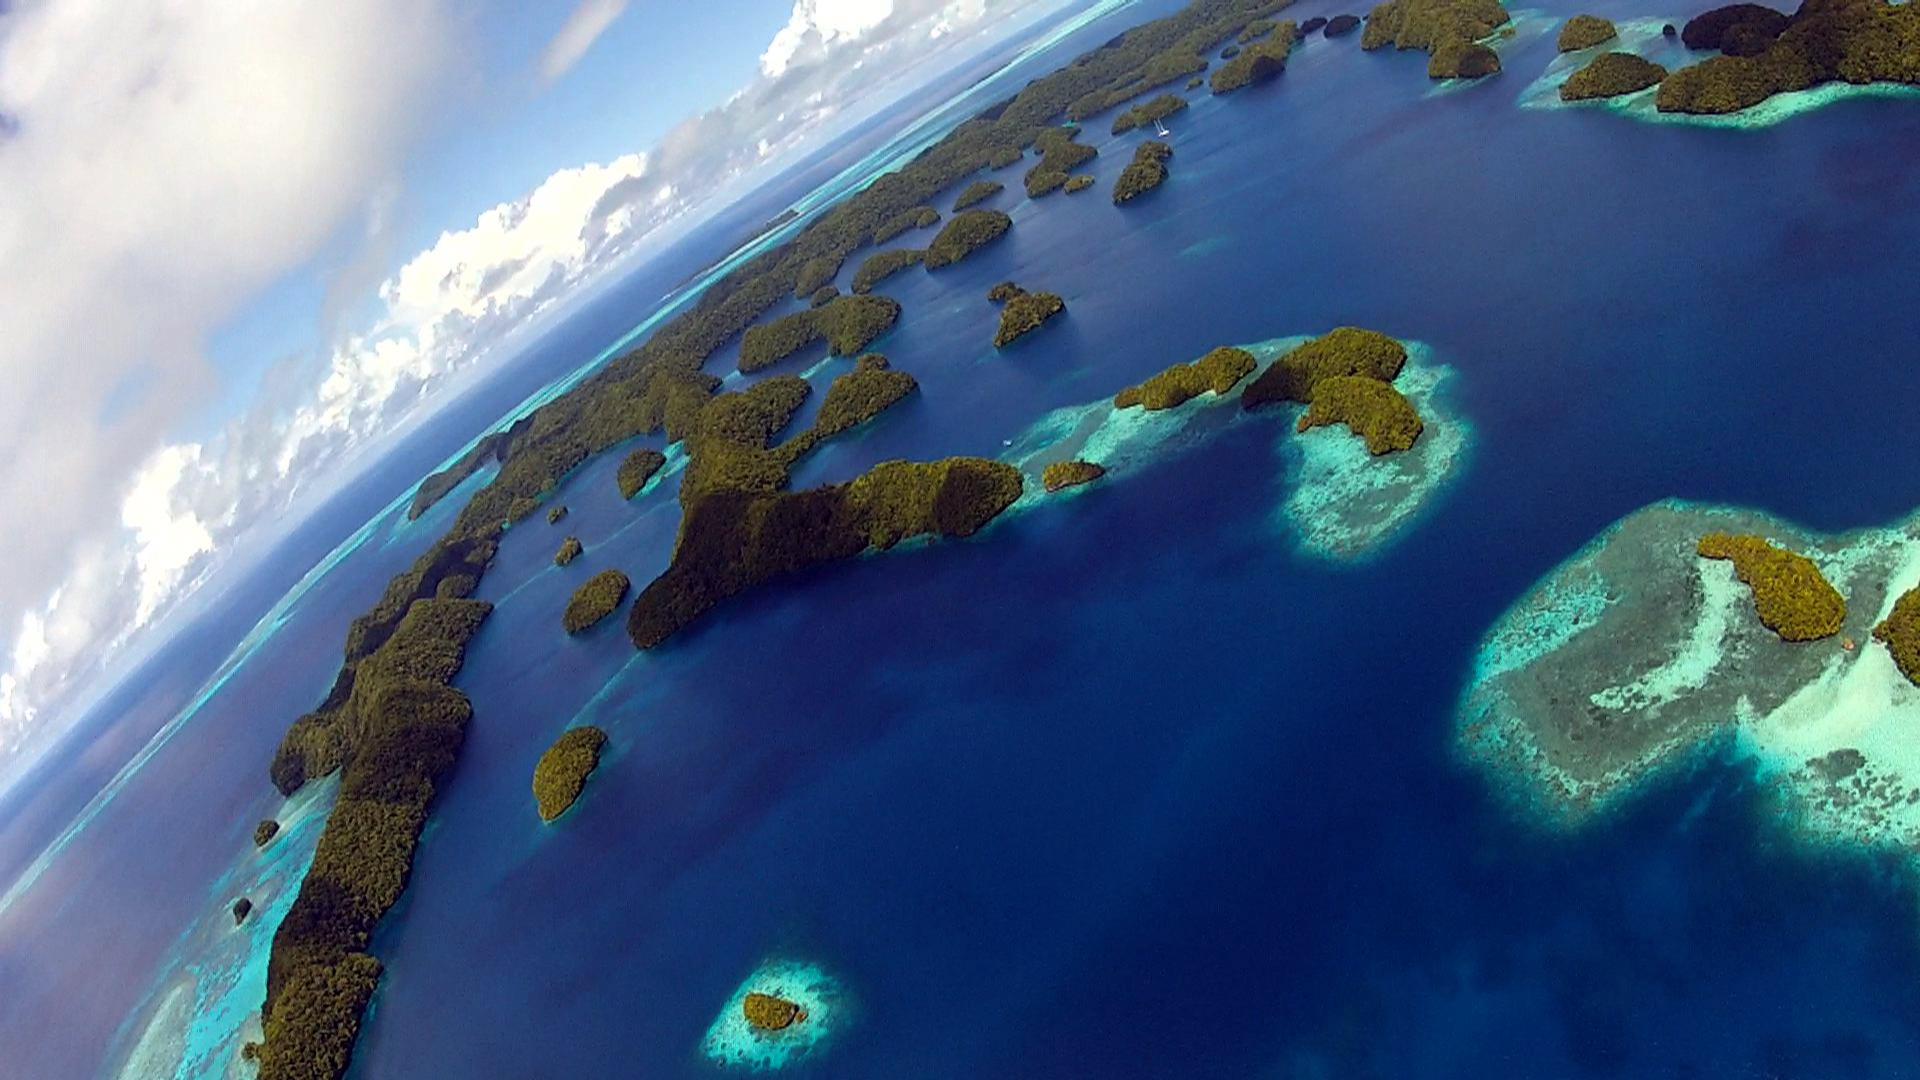 帕劳由多个大小堡礁组成,是位于西太平洋的一个岛国。